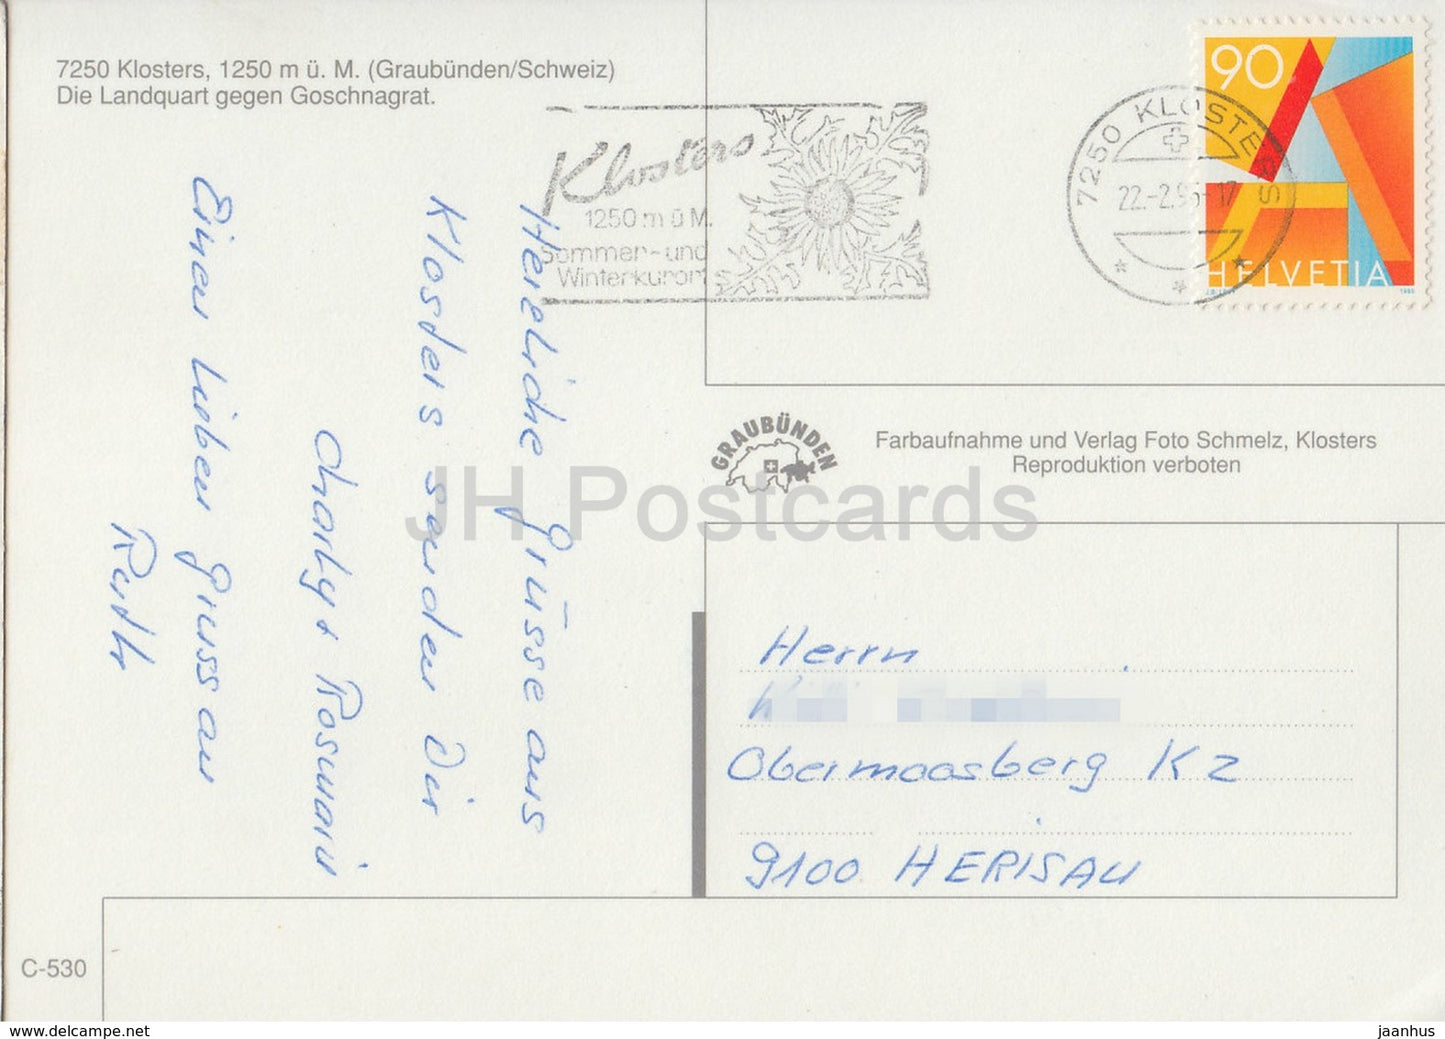 Klosters 1250 m - Die Landquart gegen Goschnagrat - 7250 - 1995 - Suisse - occasion